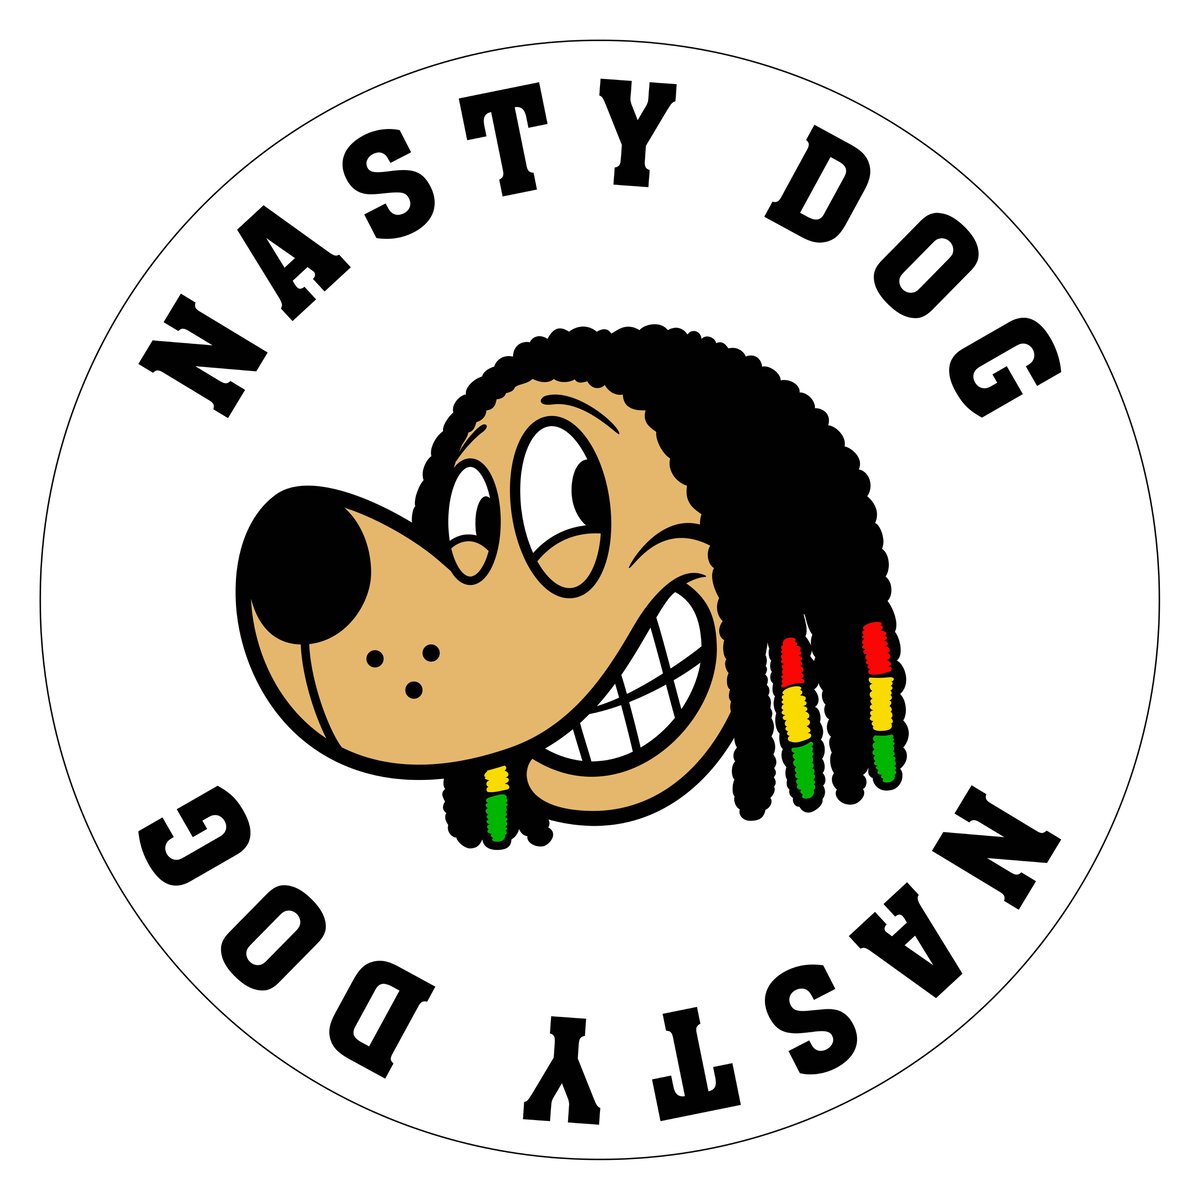 NASTY DOG